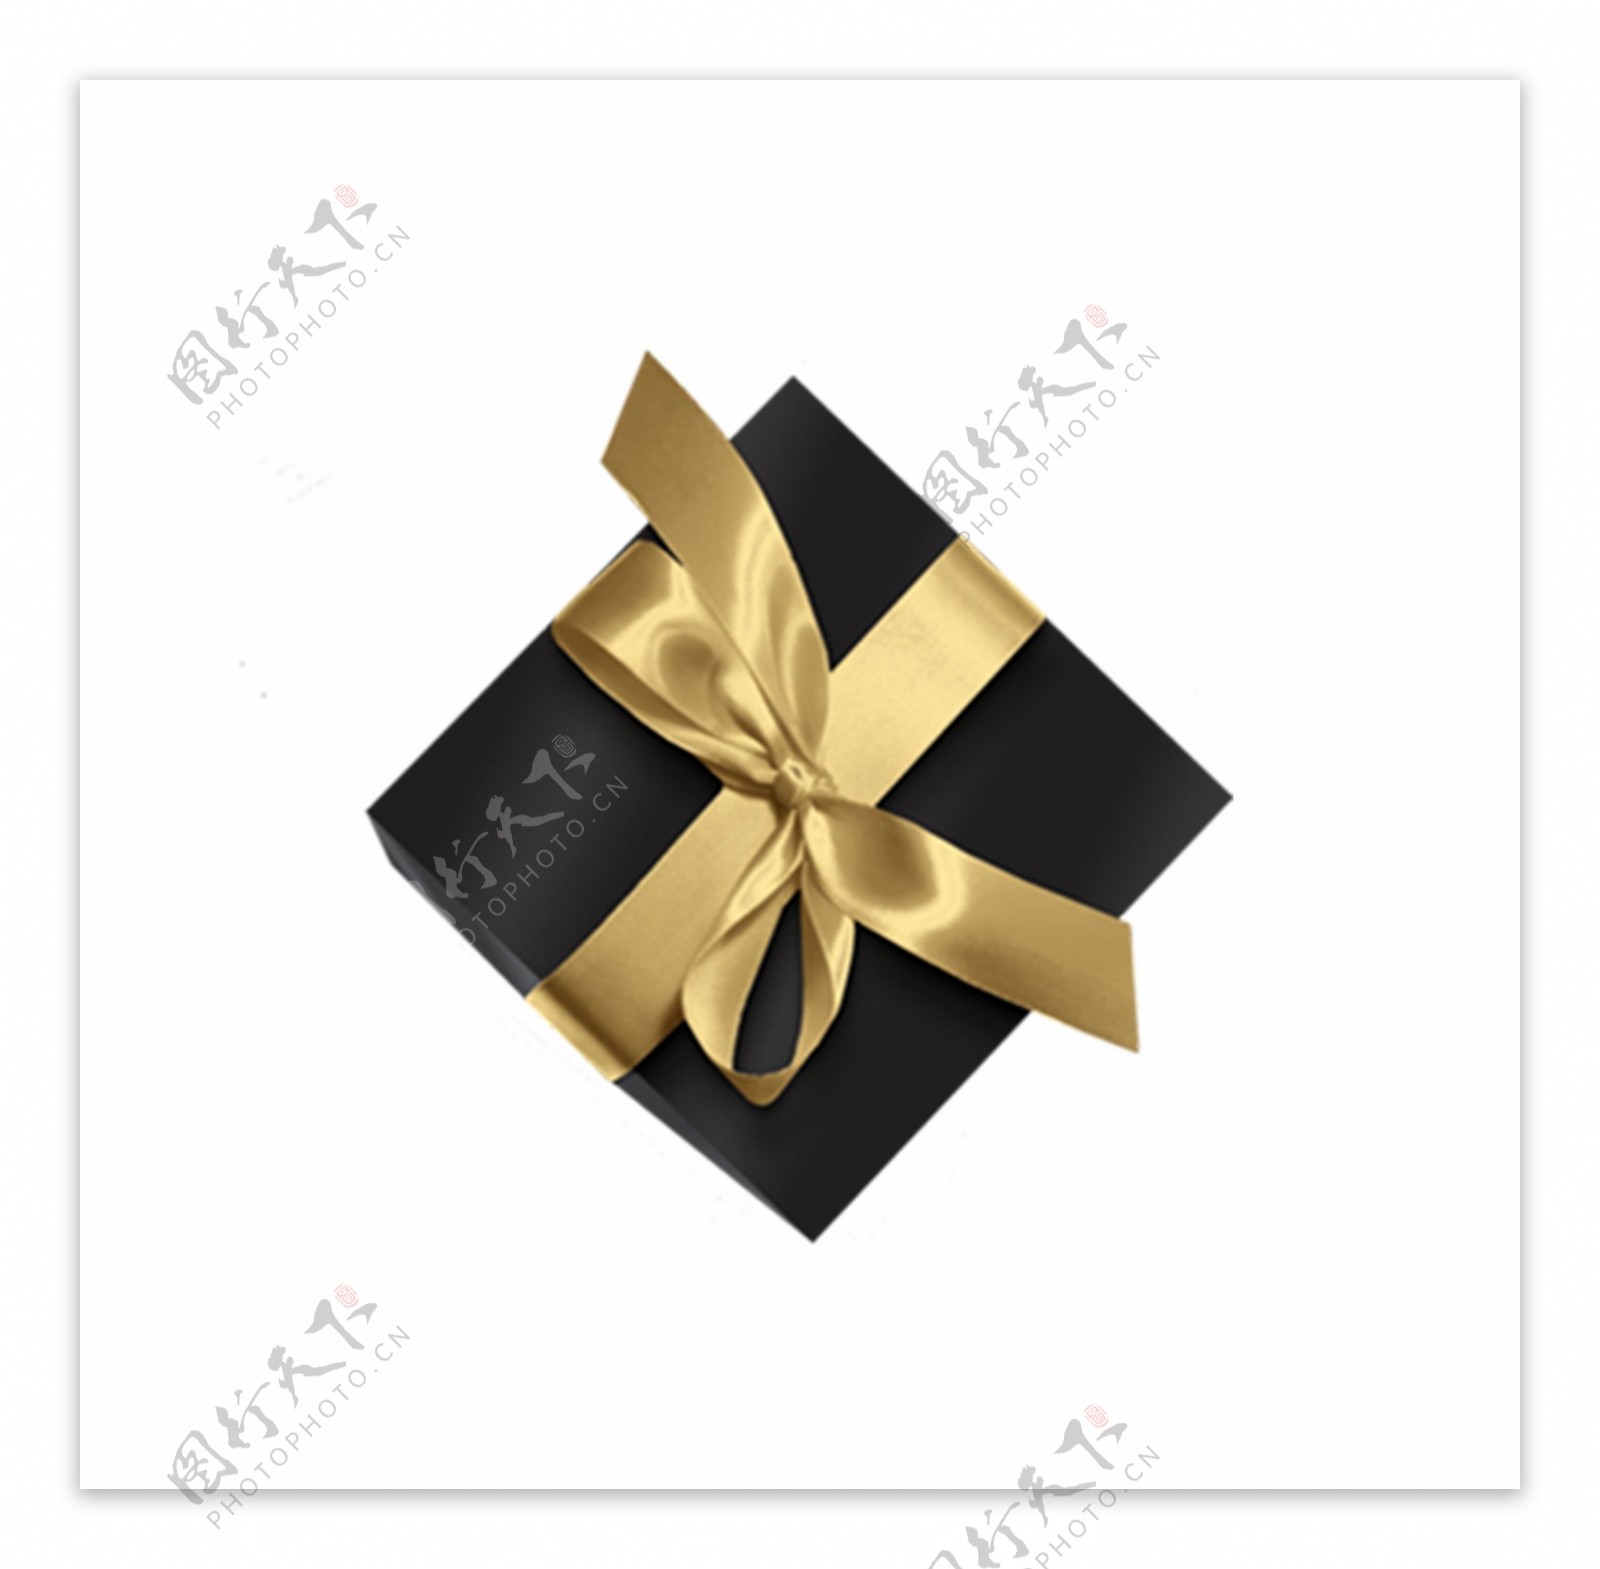 黑色盒子和金黄色丝带的礼物